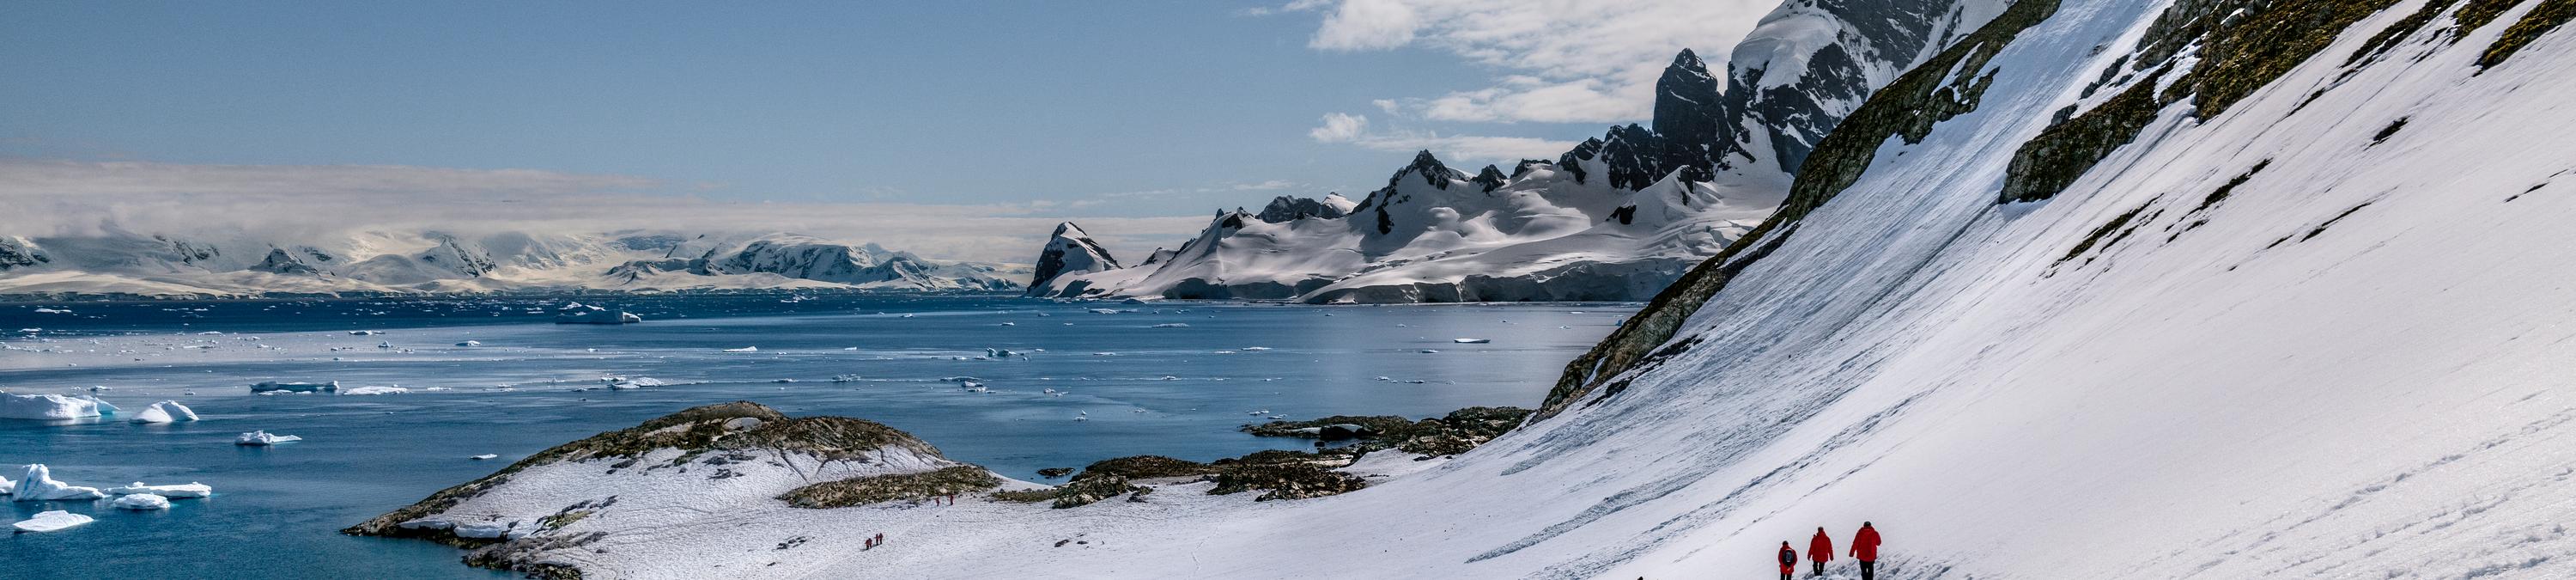 Antarctica All-Inclusive Luxury Cruises